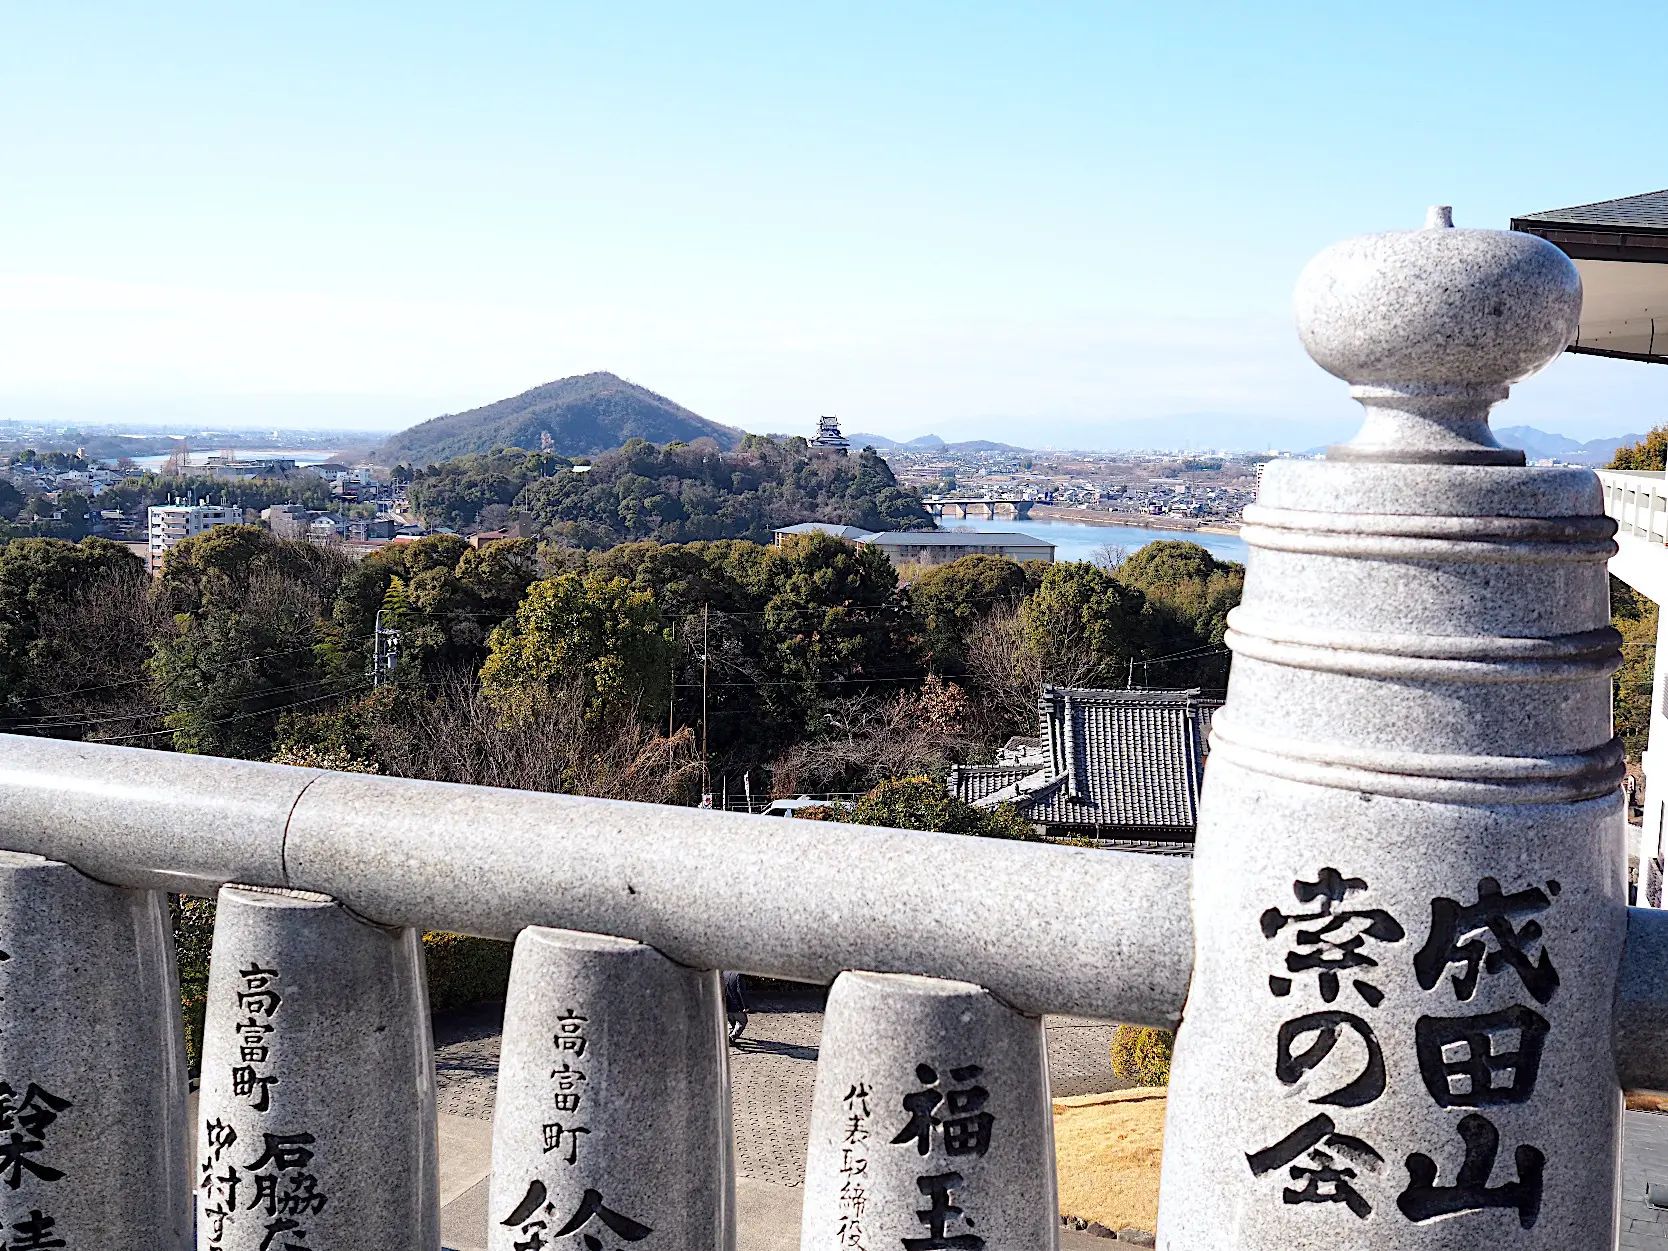 本殿が高い位置にあり、木曽川と犬山城が望めます。